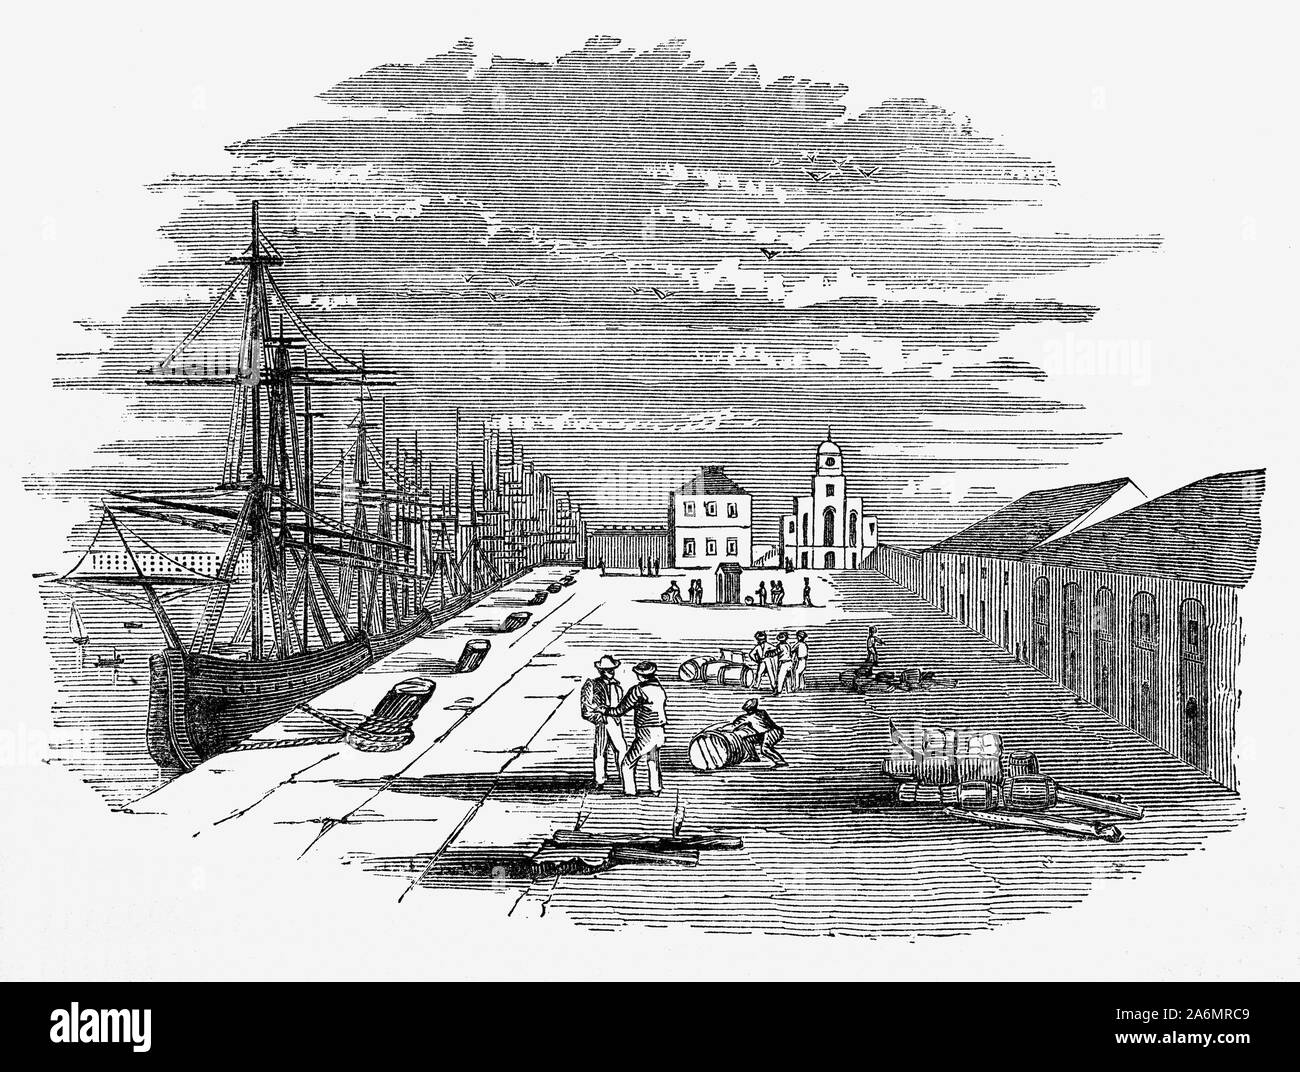 La East India Docks di importazione progettata dall'ingegnere Ralph Walker,erano situati a nord-est del West India Docks di Londra. Essi sono stati basati sulle attuali Brunswick Dock, che era stato utilizzato per i lavori di allestimento e di riparazione di navi come parte di Blackwall Yard. Il Brunswick Dock, che erano state originariamente collegato direttamente al Tamigi a sud, divenne il Dock all'esportazione. A nord la società ha costruito una maggiore importazione Dock. Entrambi erano collegati alla Thames attraverso un ingresso orientale bacino. Foto Stock